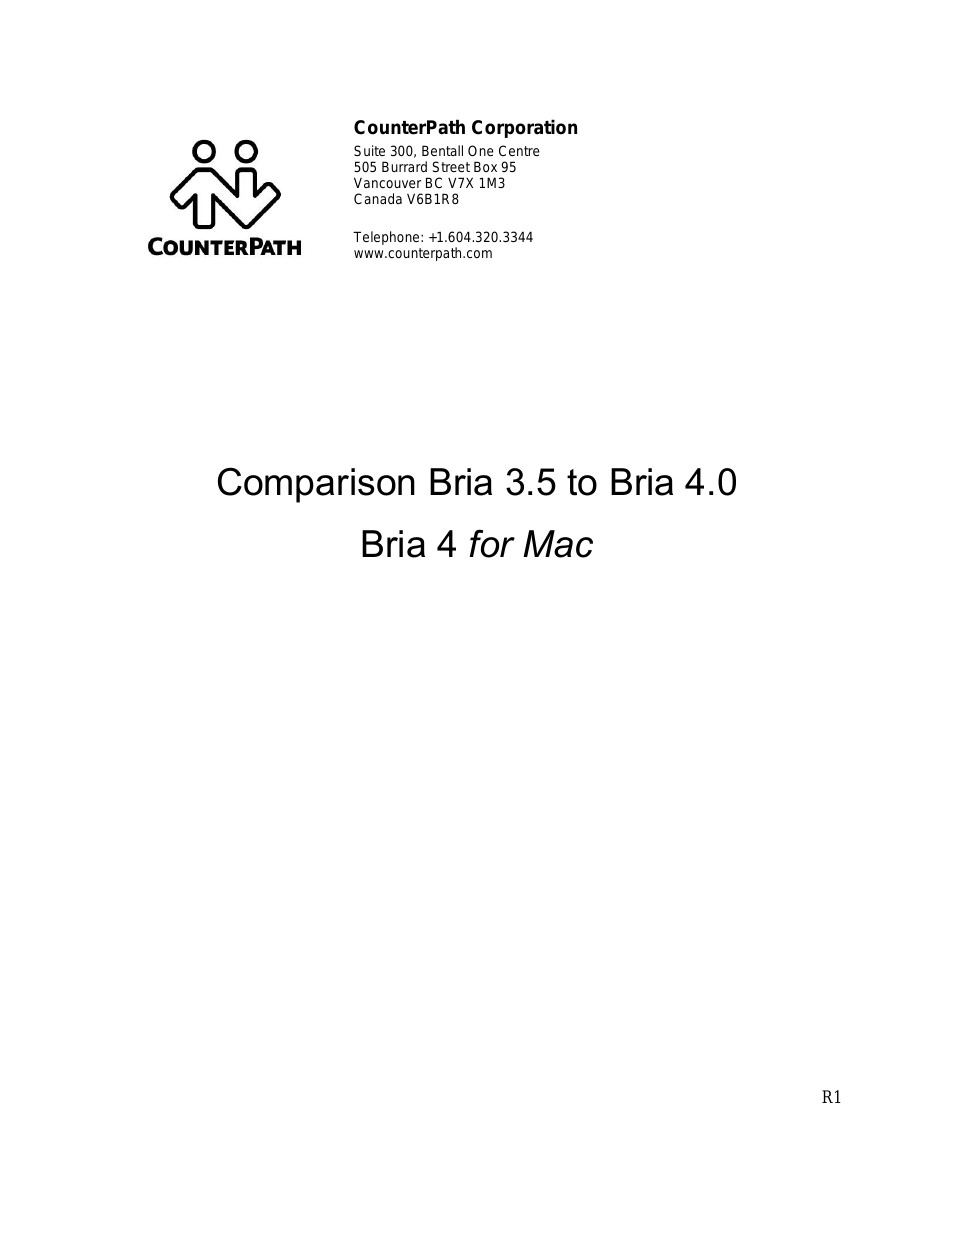 Bria 3.5 vs 4 for Mac Comparison Guide